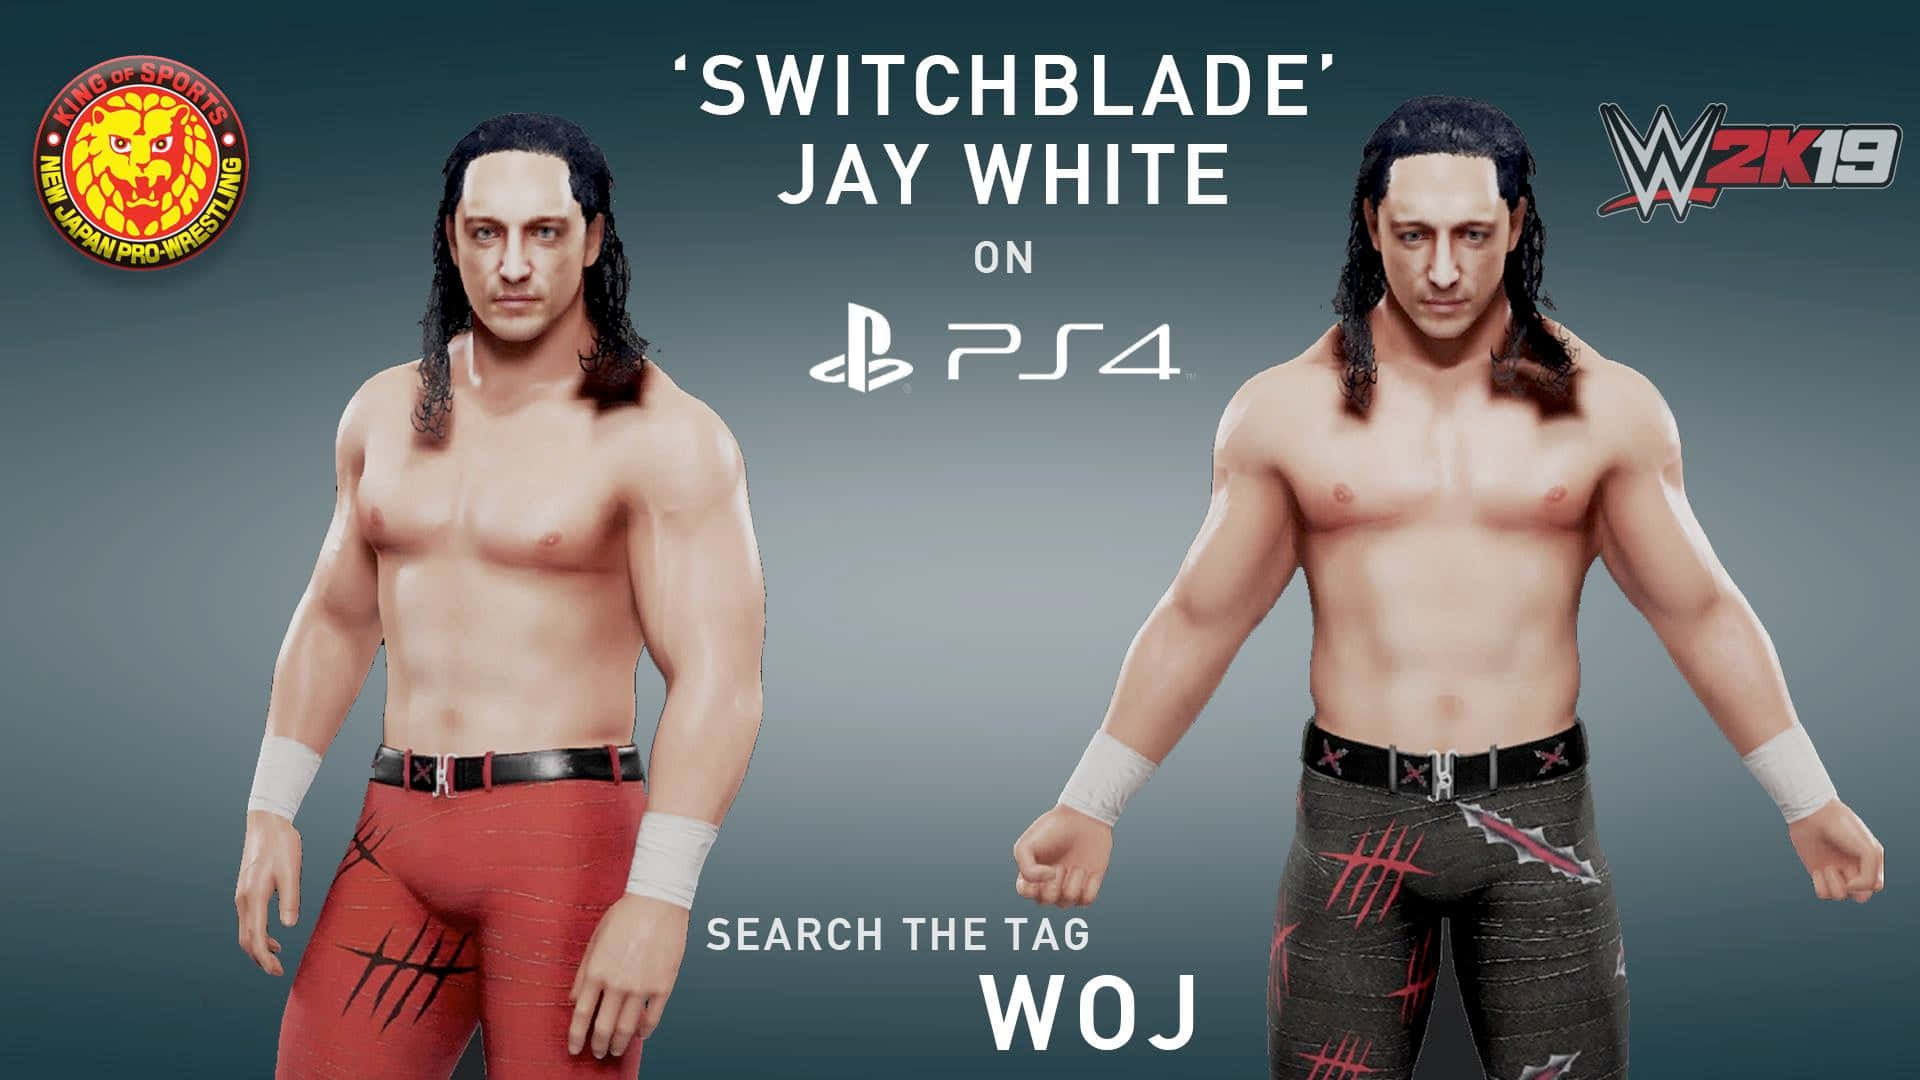 Switchblade Jay White Wwe 2k19 Background